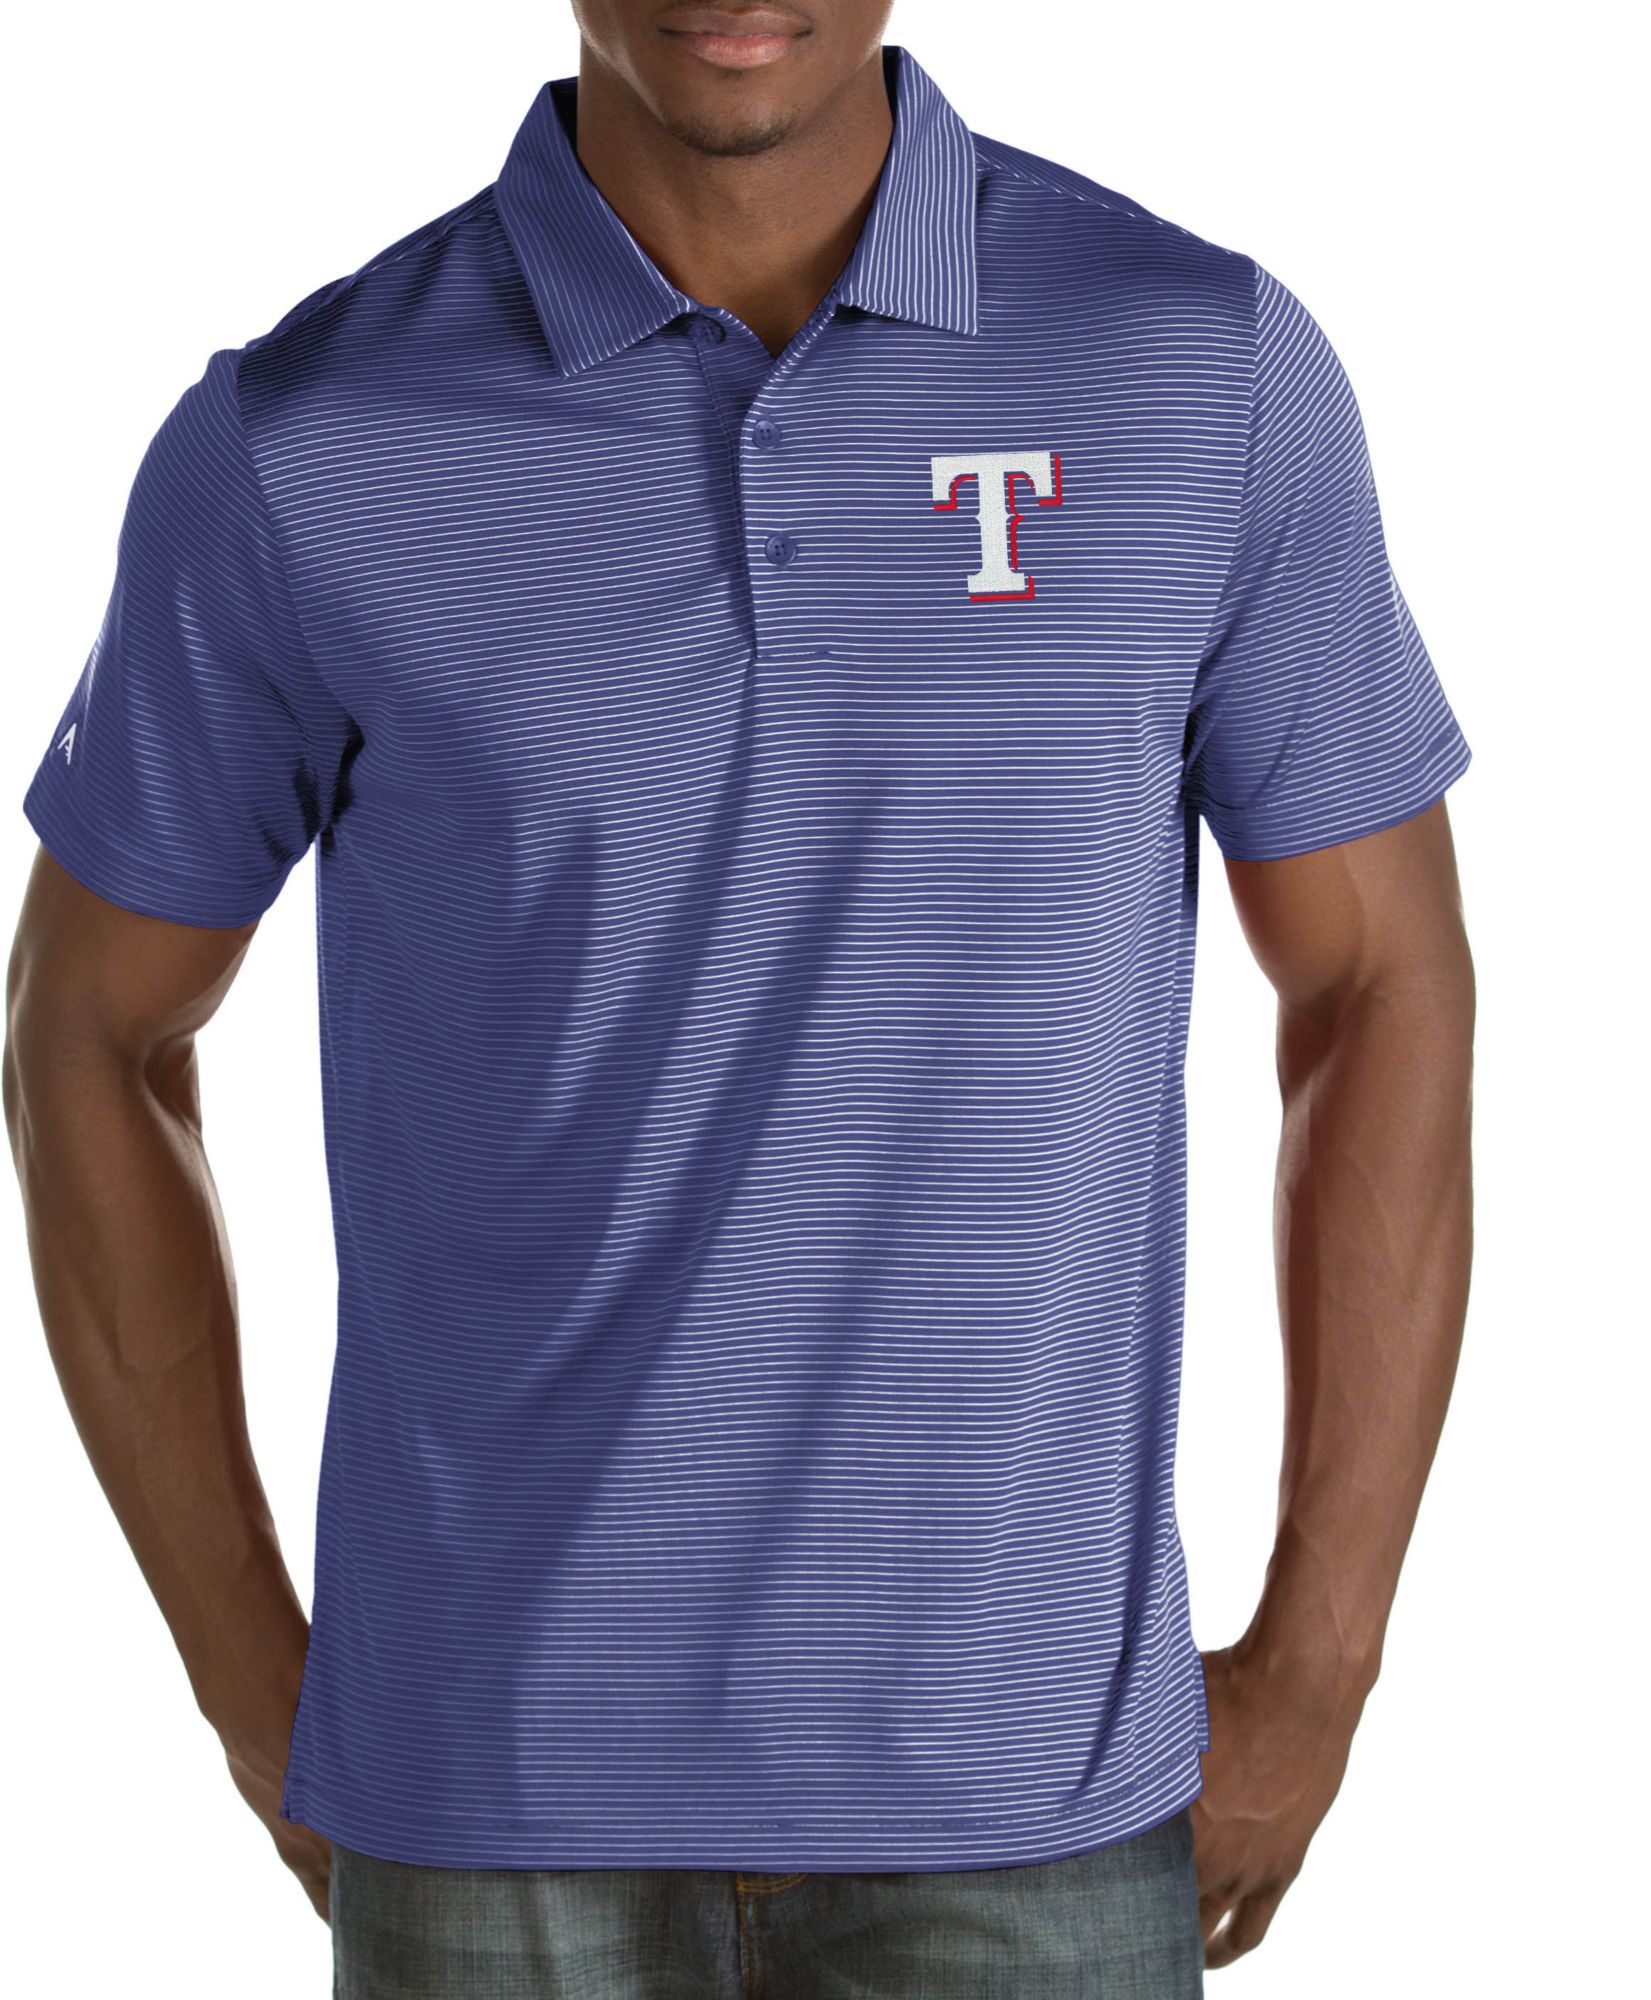 texas rangers golf shirt